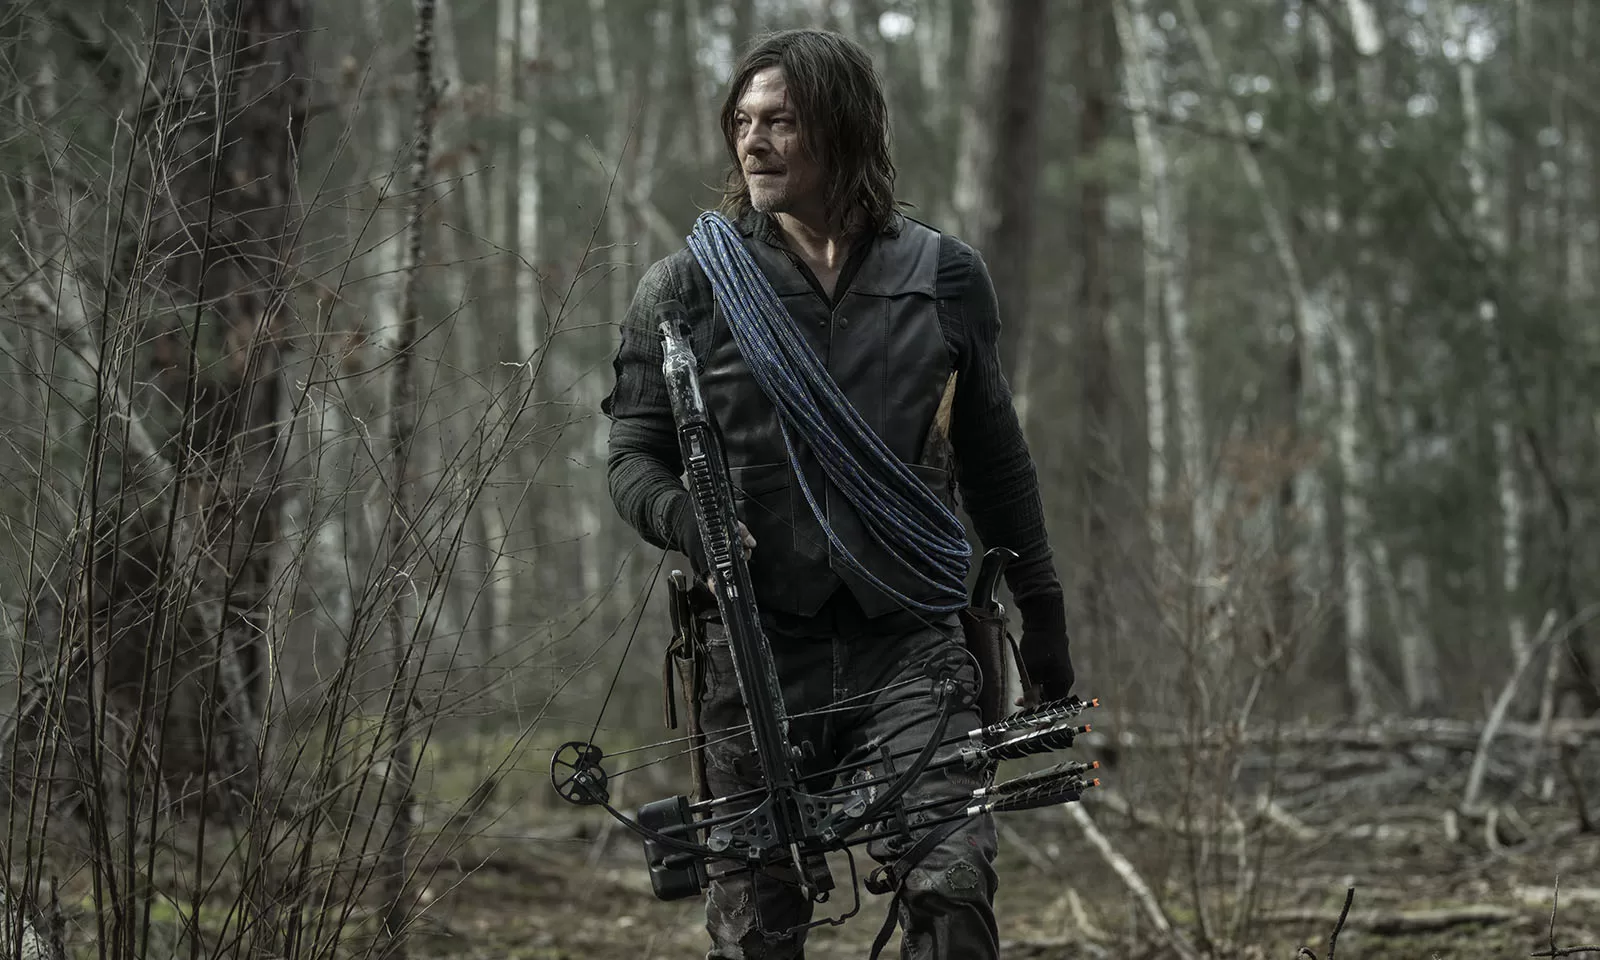 Quem morreu no Episódio 5 da 1ª Temporada de The Walking Dead: Daryl Dixon?